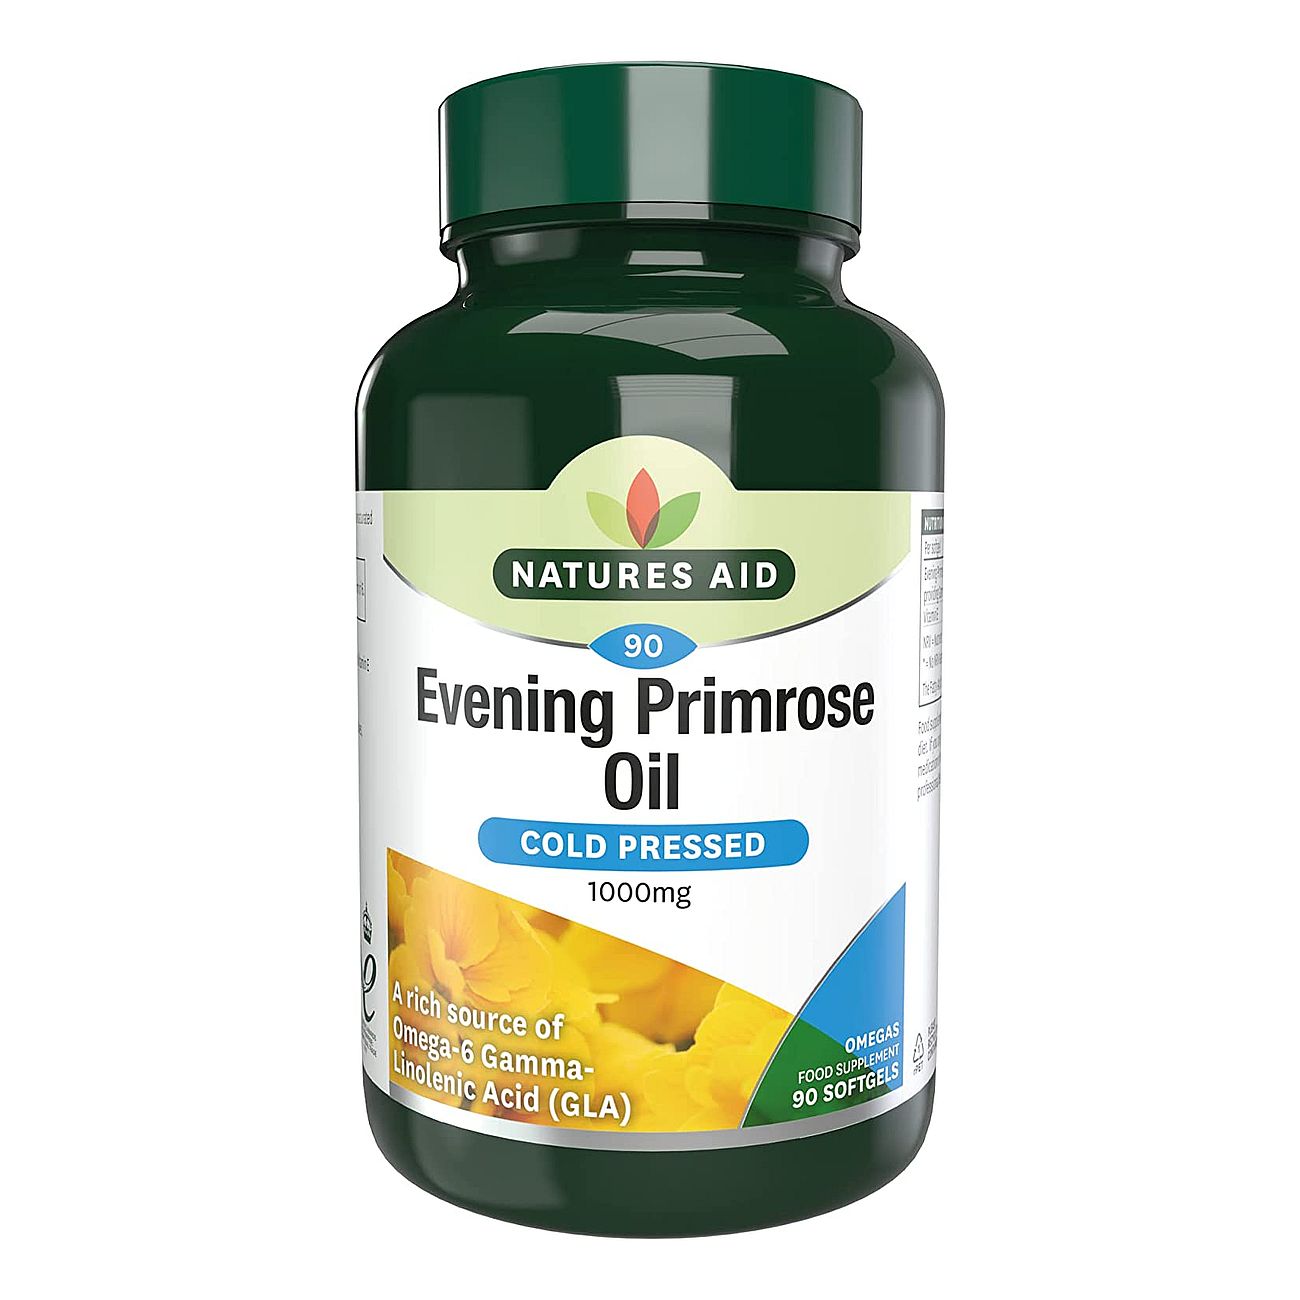 Omega 6 Evening Primrose Oil 1000mg 90 Softgels